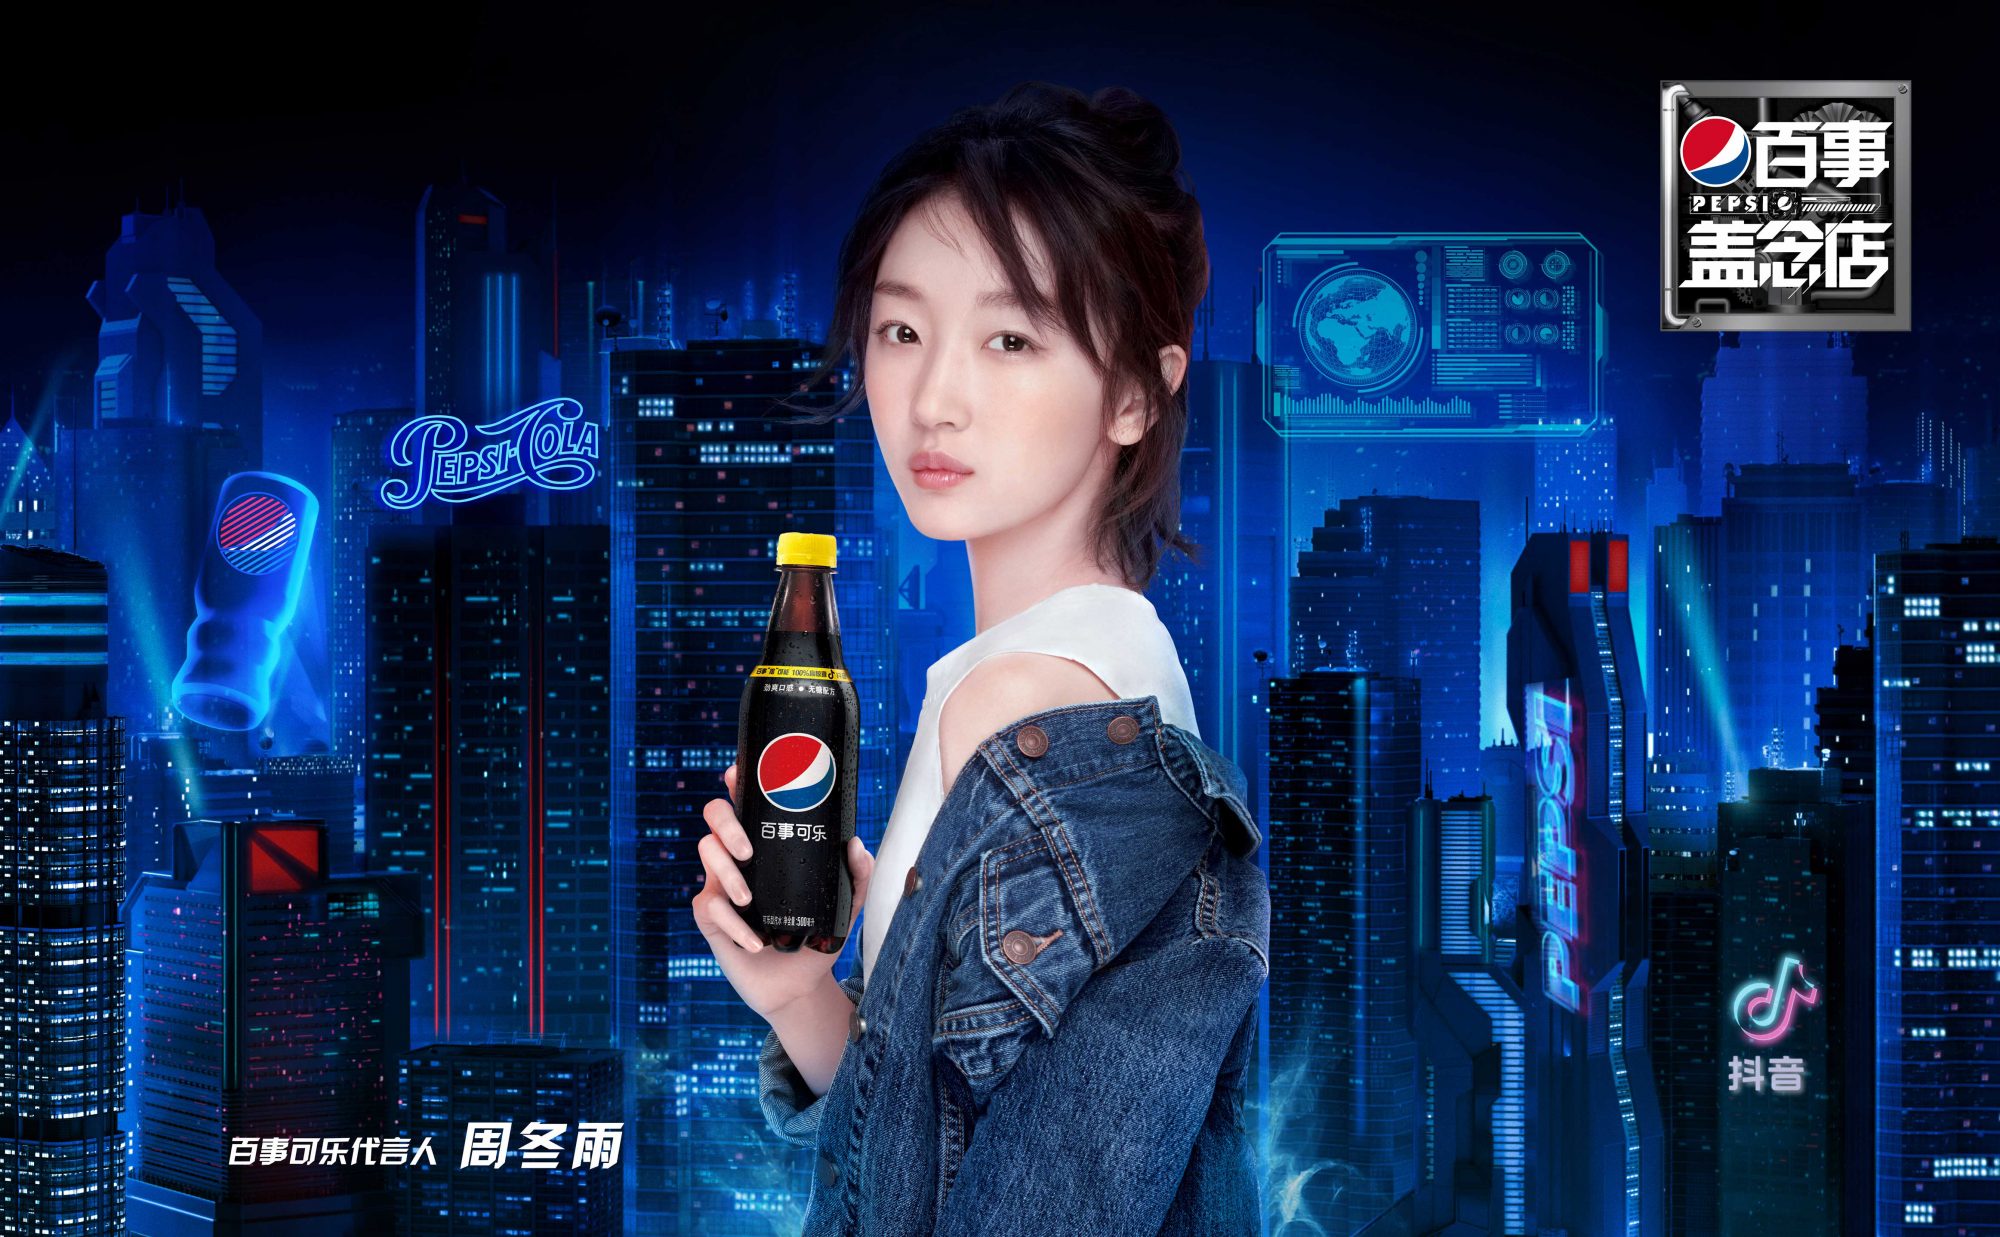 BC-Pepsi-China-1-2000x1237